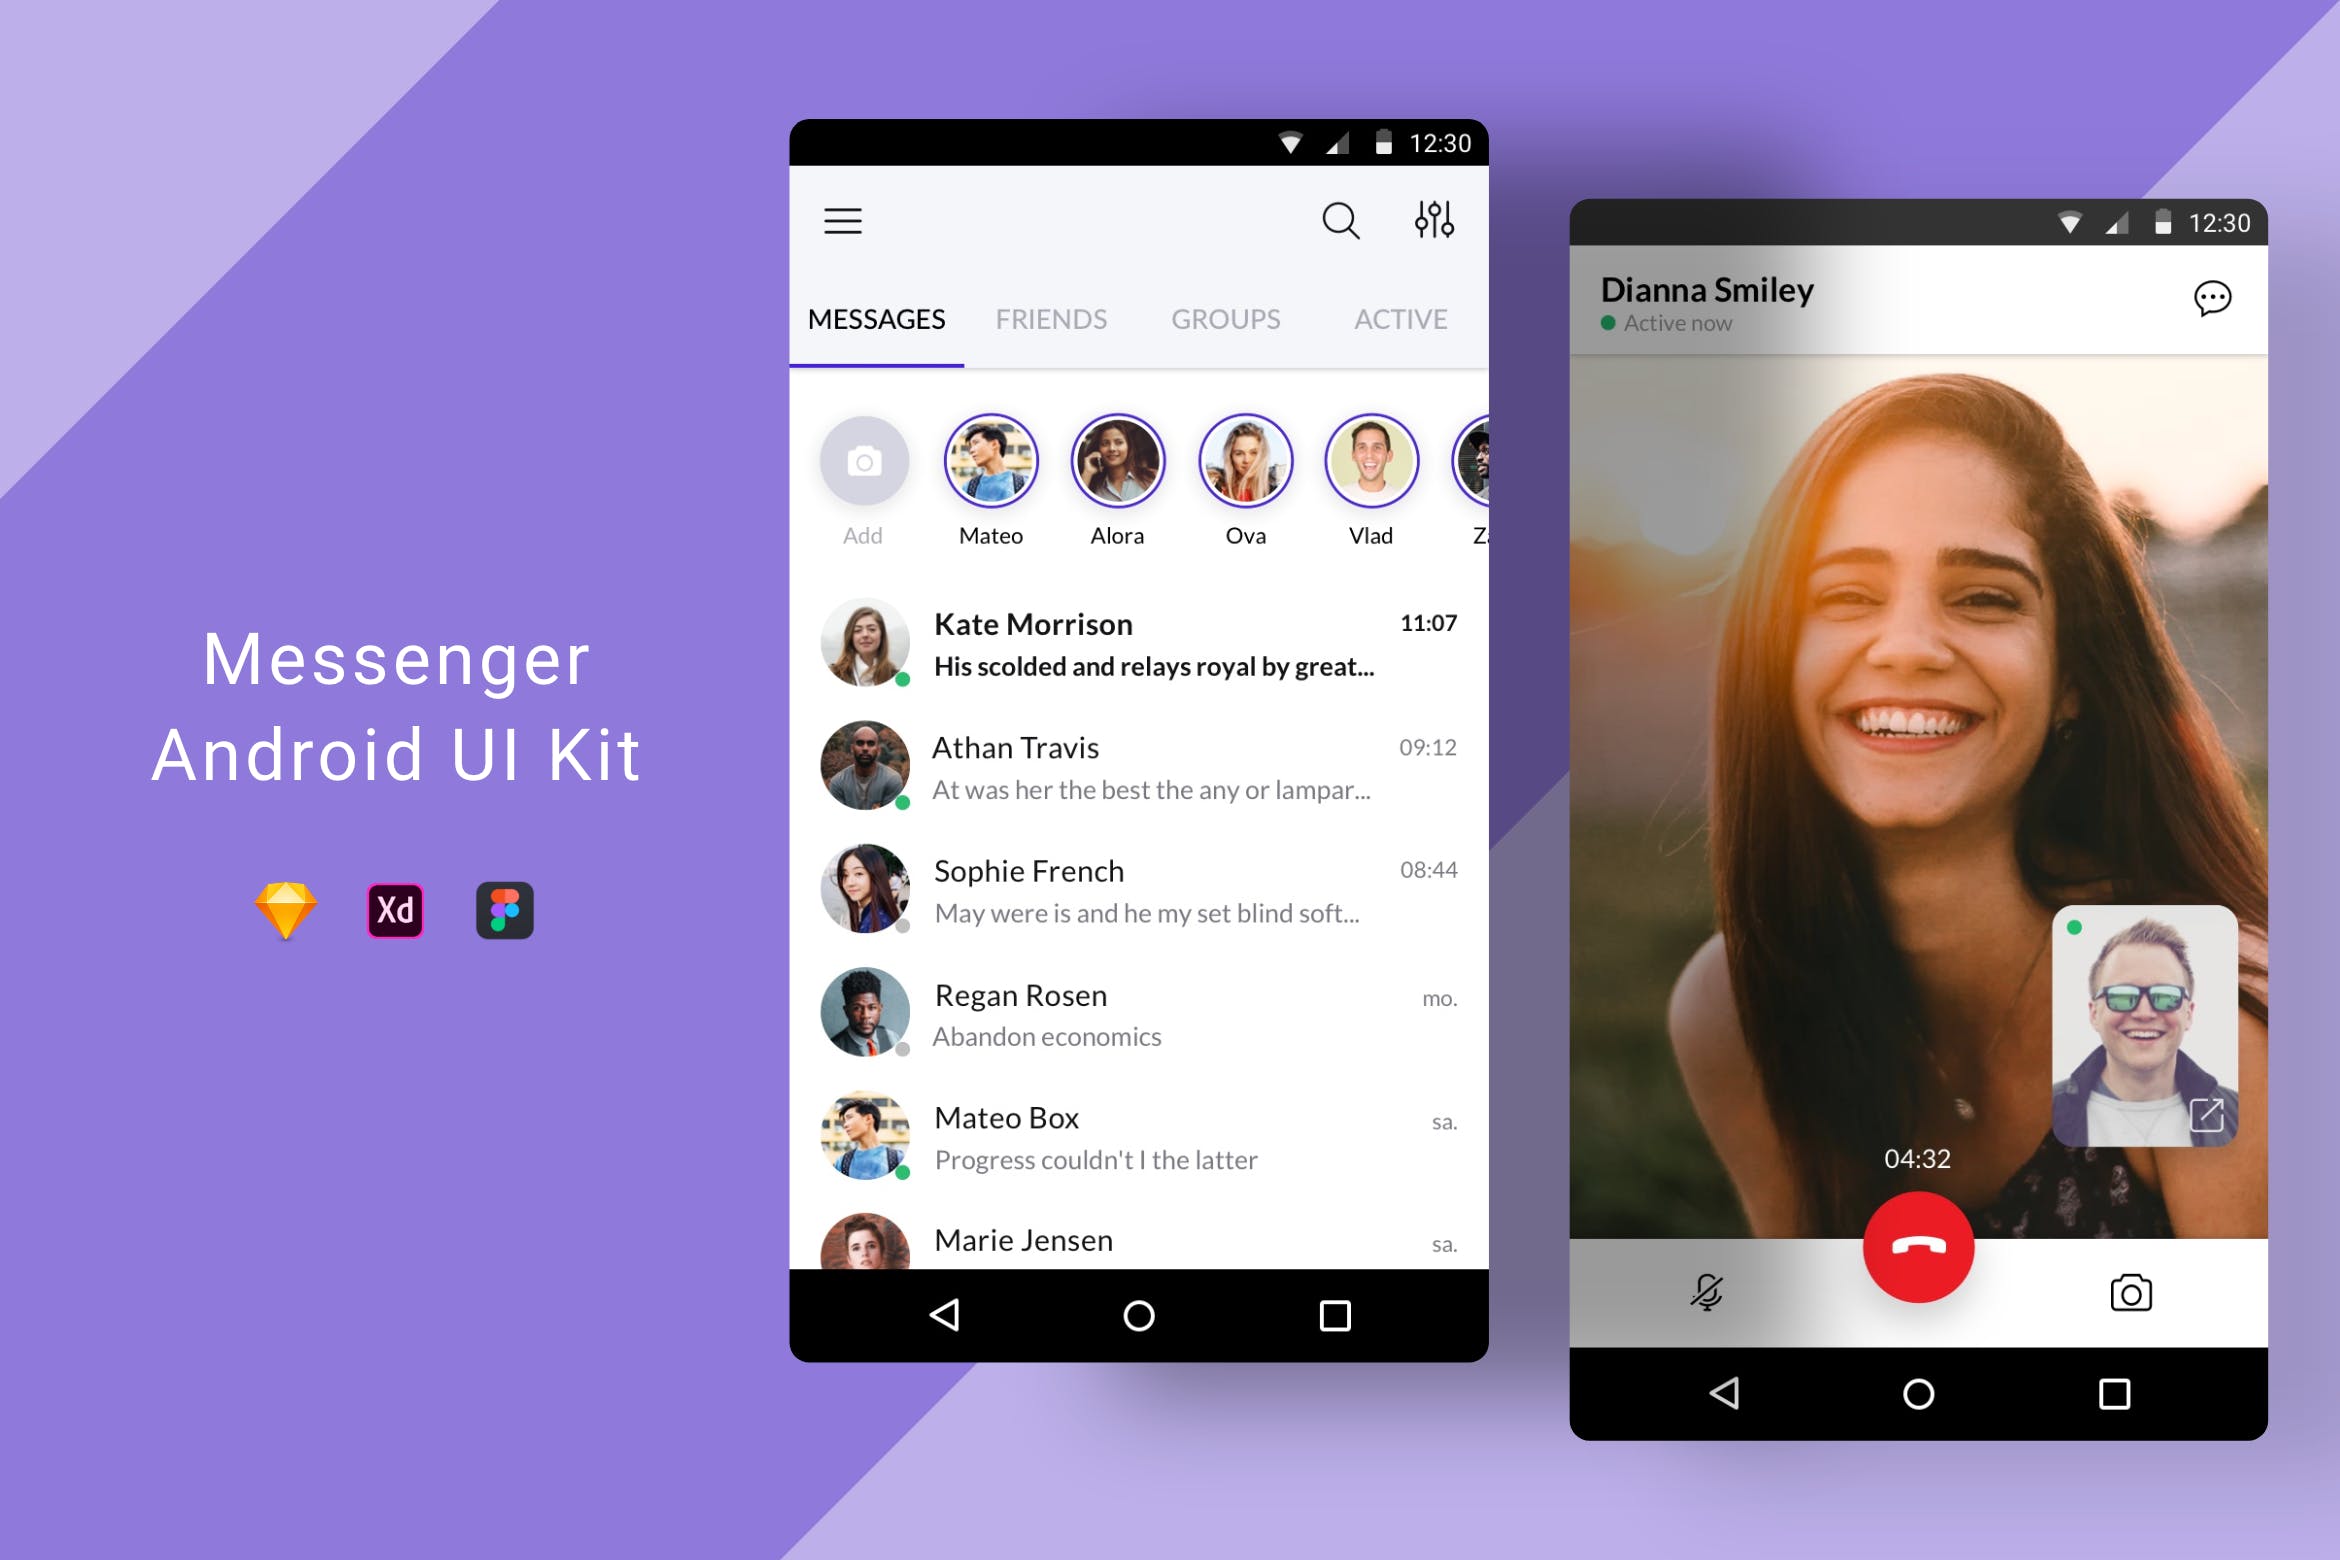 Android平台社交APP好友列表&视频通话界面设计第一素材精选模板 Messenger Android UI Kit插图